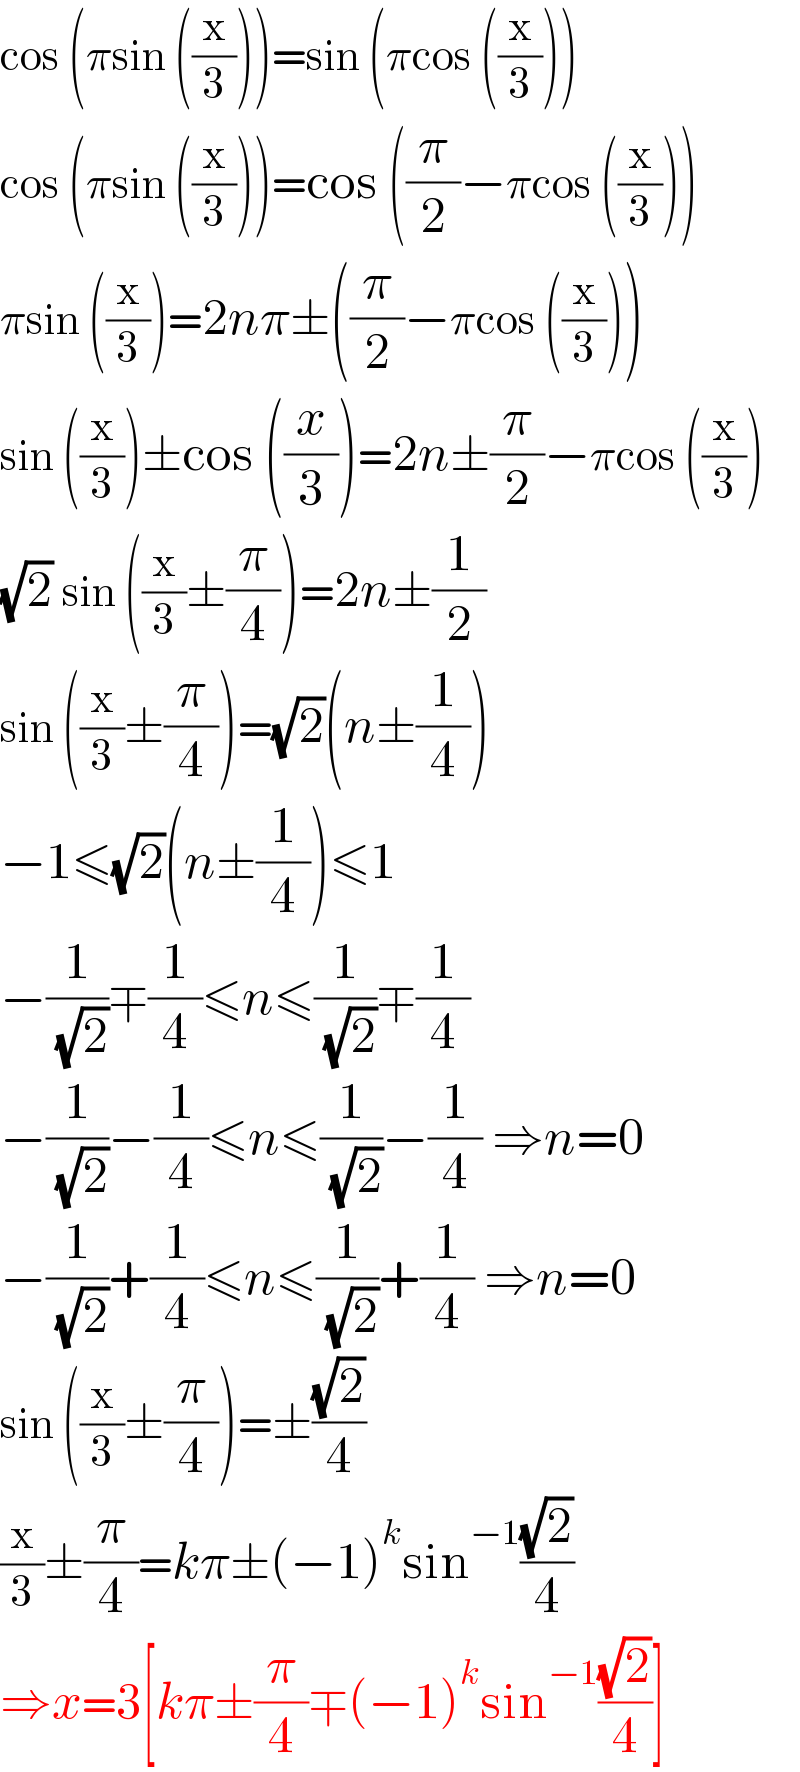 cos (πsin ((x/3)))=sin (πcos ((x/3)))  cos (πsin ((x/3)))=cos ((π/2)−πcos ((x/3)))  πsin ((x/3))=2nπ±((π/2)−πcos ((x/3)))  sin ((x/3))±cos ((x/3))=2n±(π/2)−πcos ((x/3))  (√2) sin ((x/3)±(π/4))=2n±(1/2)  sin ((x/3)±(π/4))=(√2)(n±(1/4))  −1≤(√2)(n±(1/4))≤1  −(1/( (√2)))∓(1/4)≤n≤(1/( (√2)))∓(1/4)  −(1/( (√2)))−(1/4)≤n≤(1/( (√2)))−(1/4) ⇒n=0  −(1/( (√2)))+(1/4)≤n≤(1/( (√2)))+(1/4) ⇒n=0  sin ((x/3)±(π/4))=±((√2)/4)  (x/3)±(π/4)=kπ±(−1)^k sin^(−1) ((√2)/4)  ⇒x=3[kπ±(π/4)∓(−1)^k sin^(−1) ((√2)/4)]  